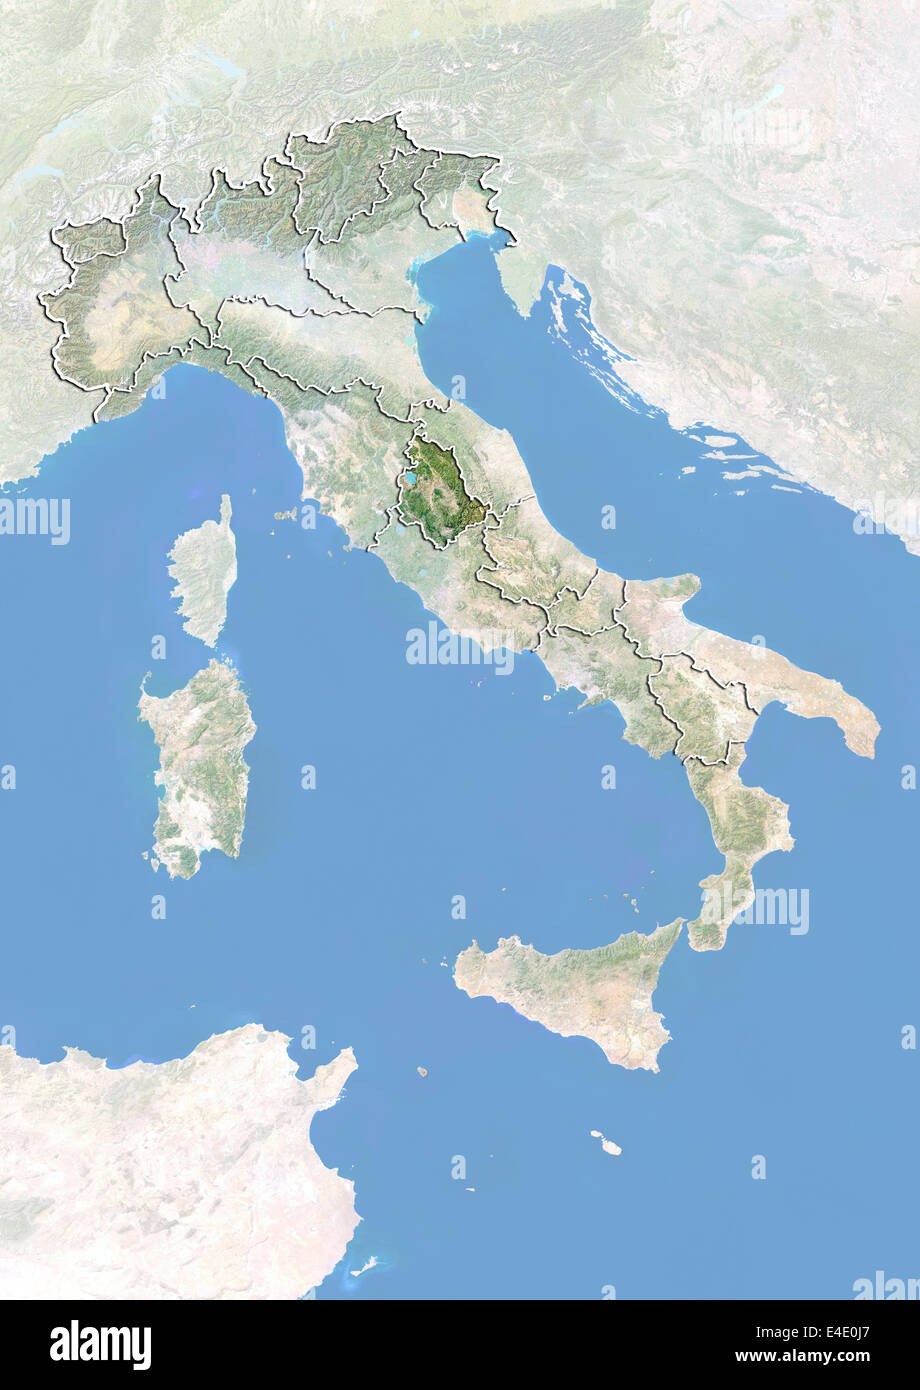 L'Italie et la région de l'Ombrie, image satellite avec effet de choc Banque D'Images